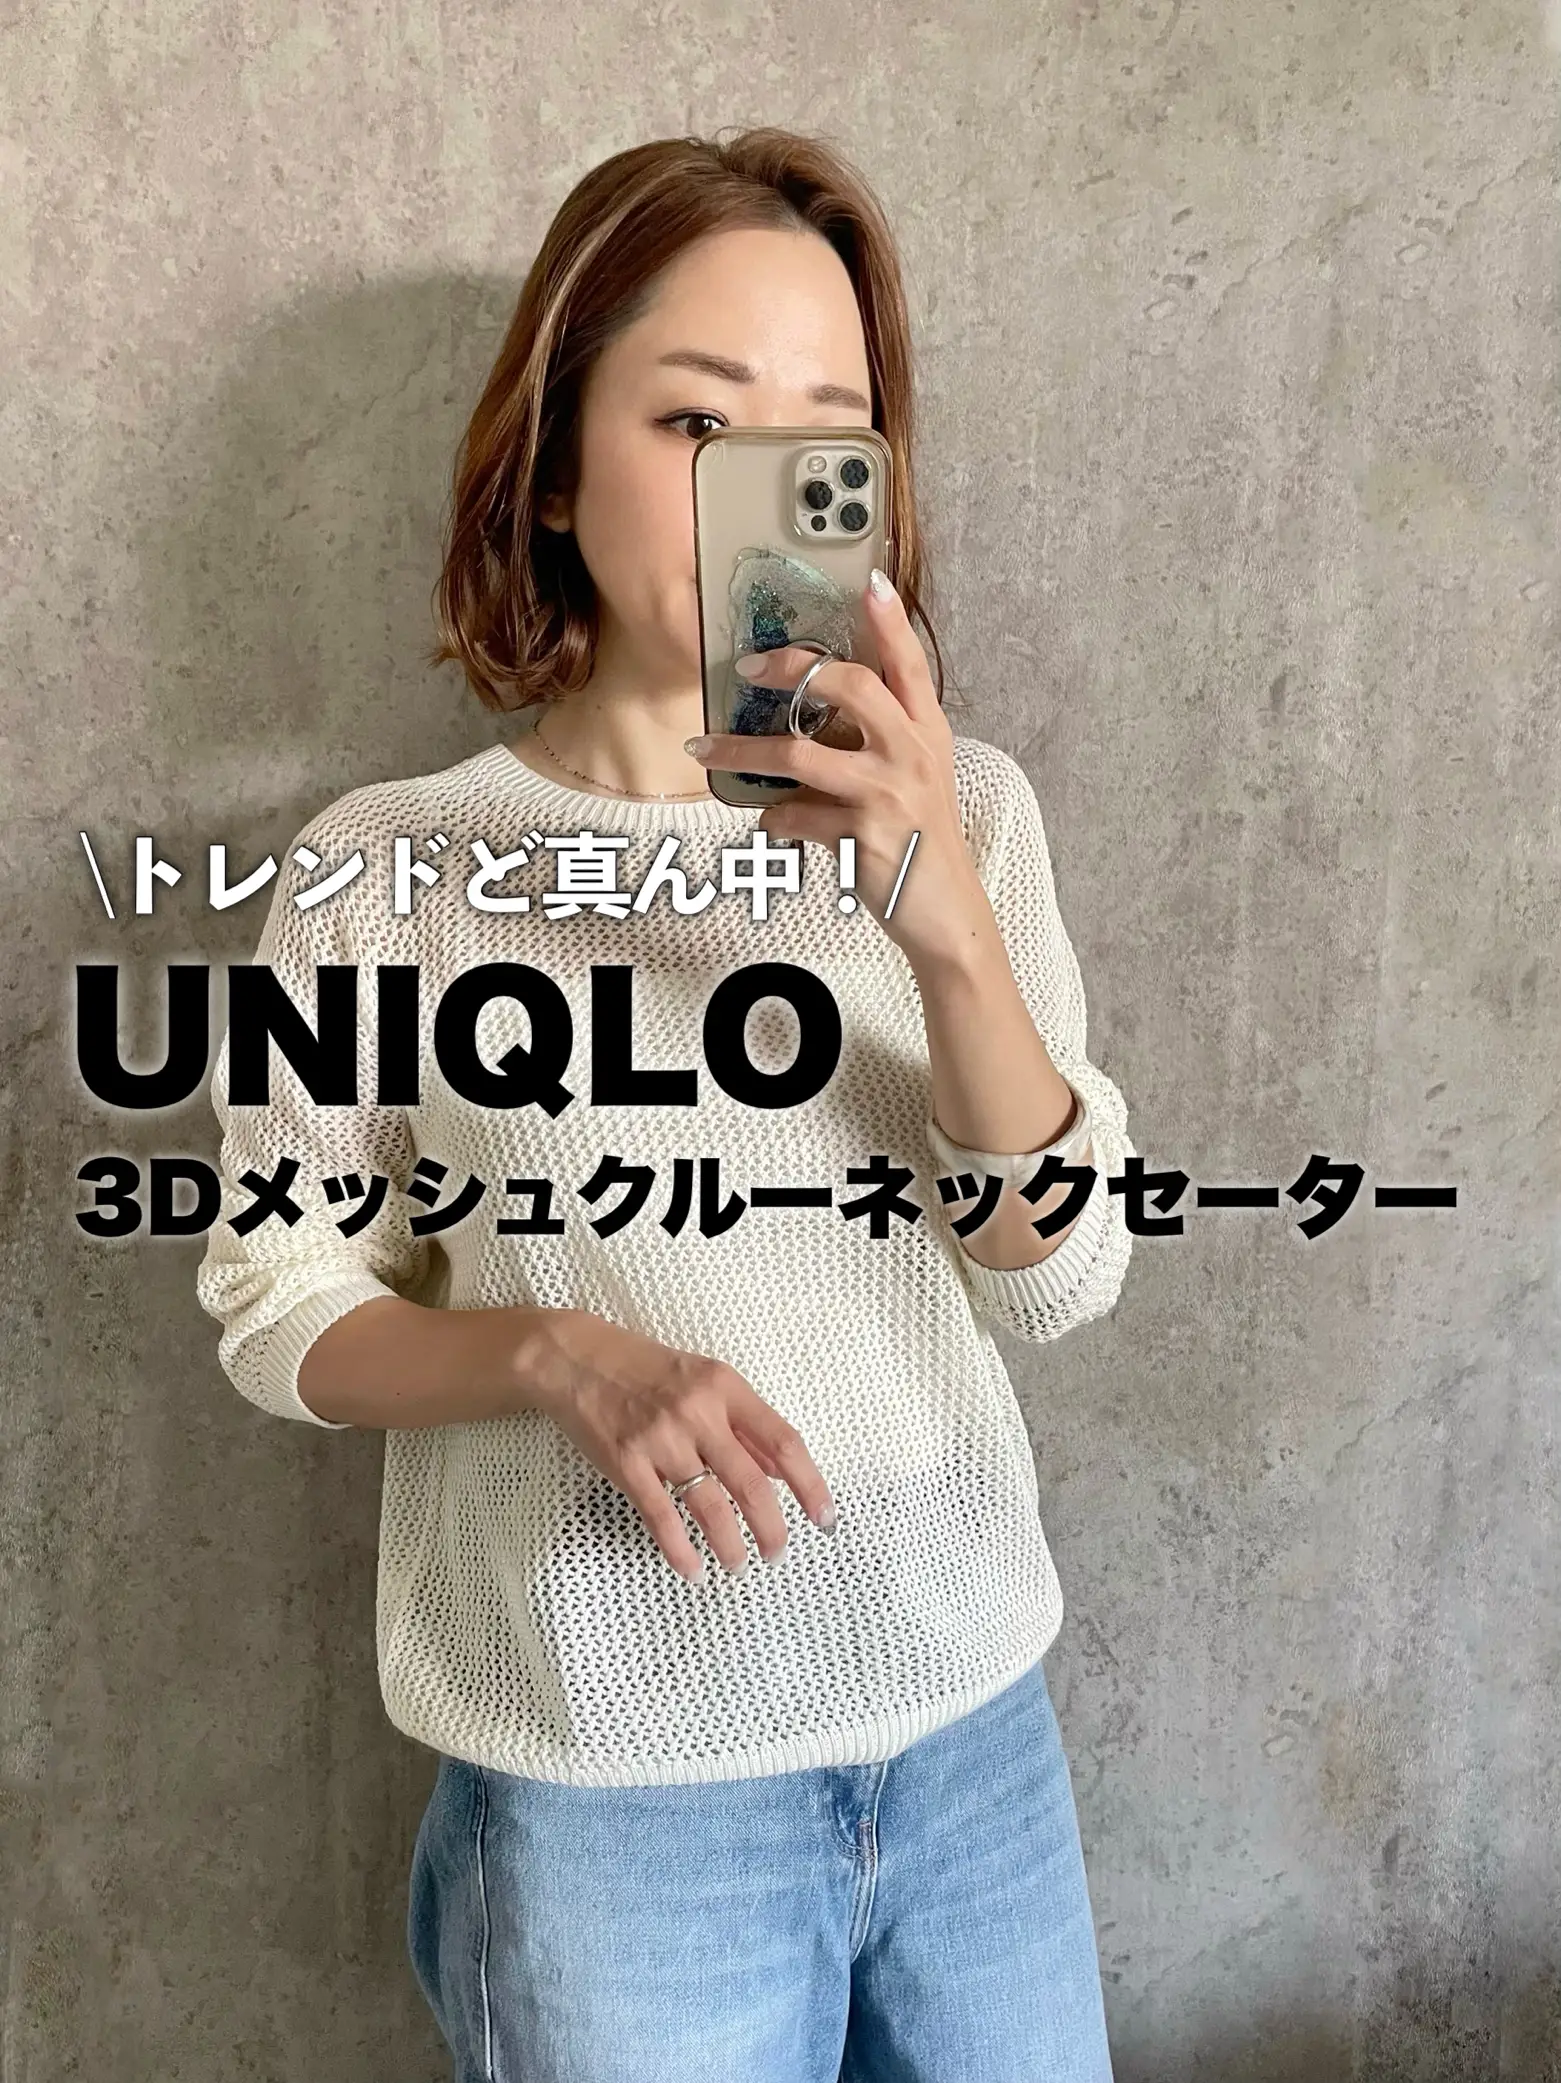 黒 桜古典 UNIQLO マメクロゴウチ 3Dメッシュセーター ブラック L